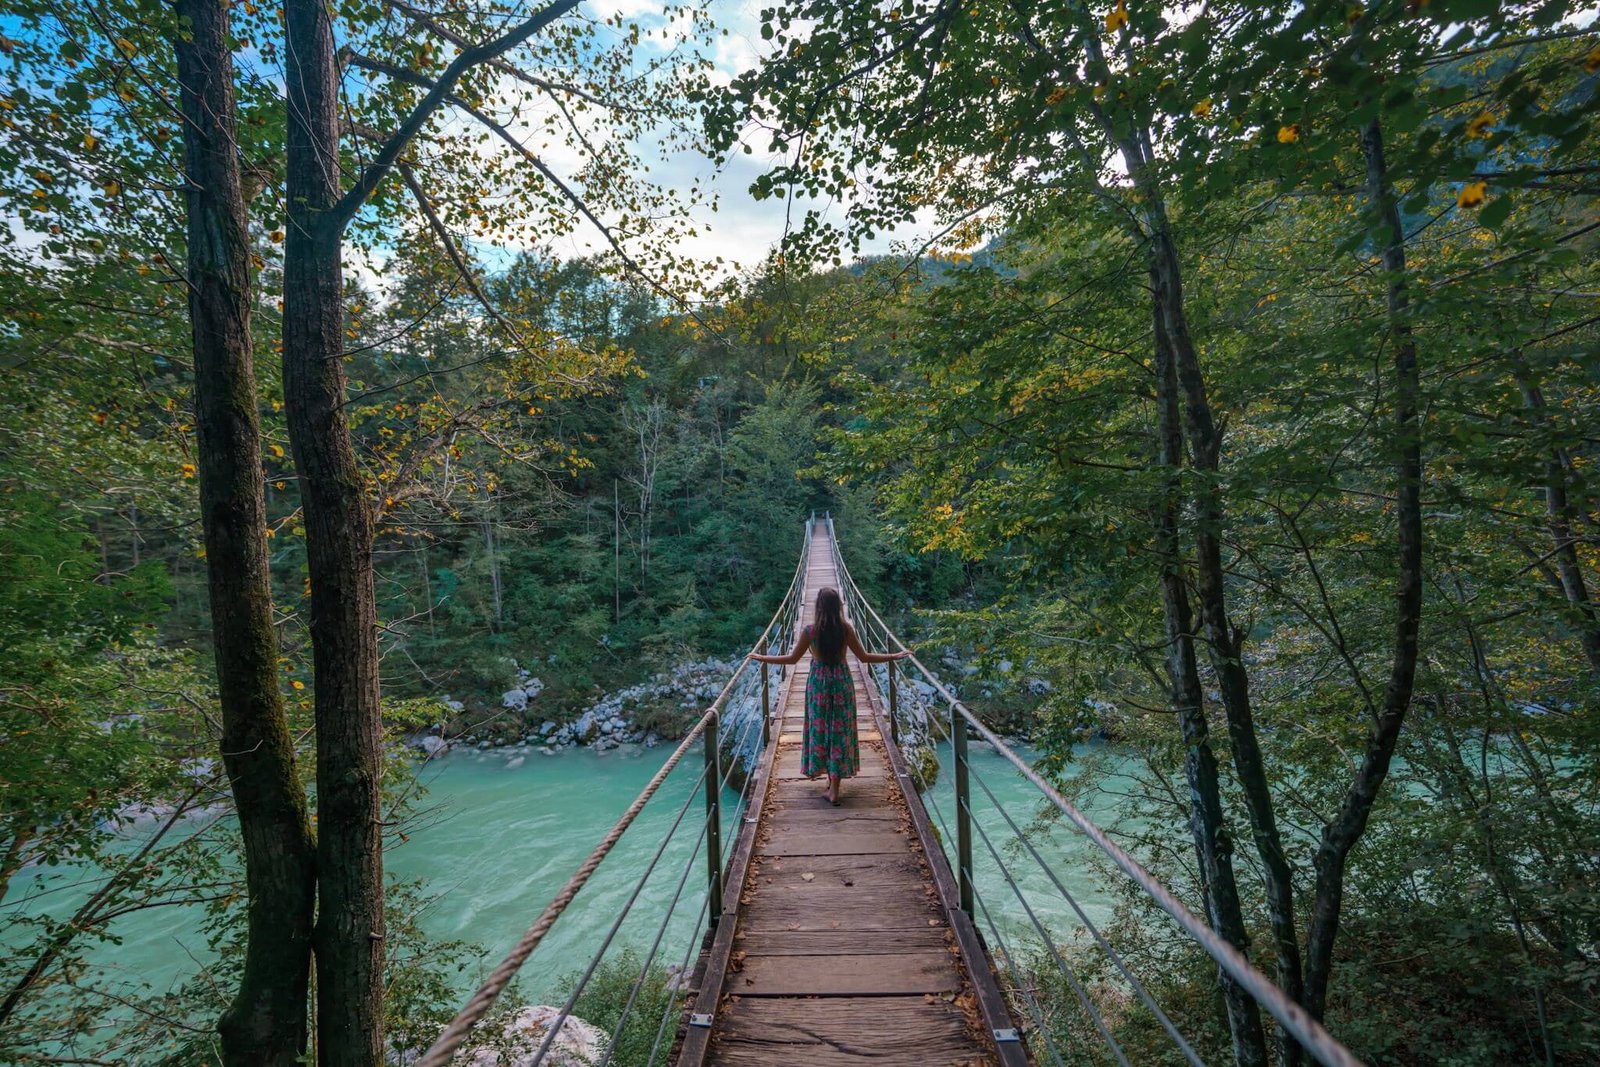 Napolean's bridge, suspension bridge in Slovenia